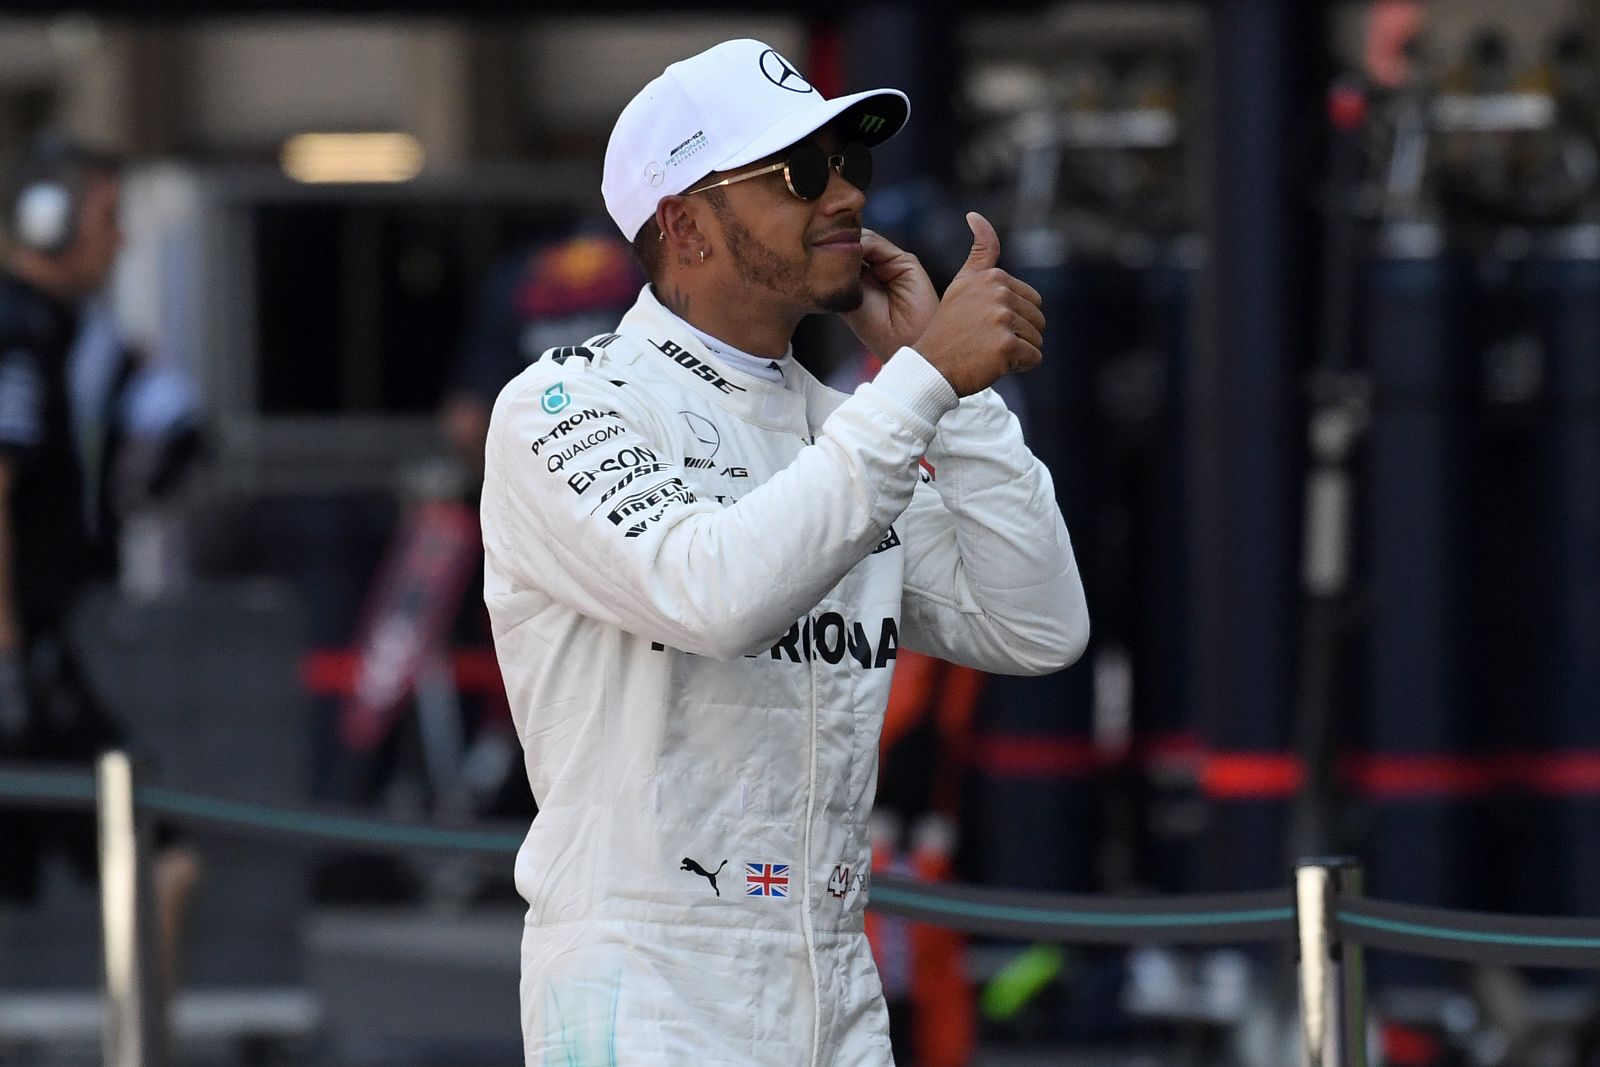 El británico Lewis Hamilton es el nuevo campeón del mundo de F1.